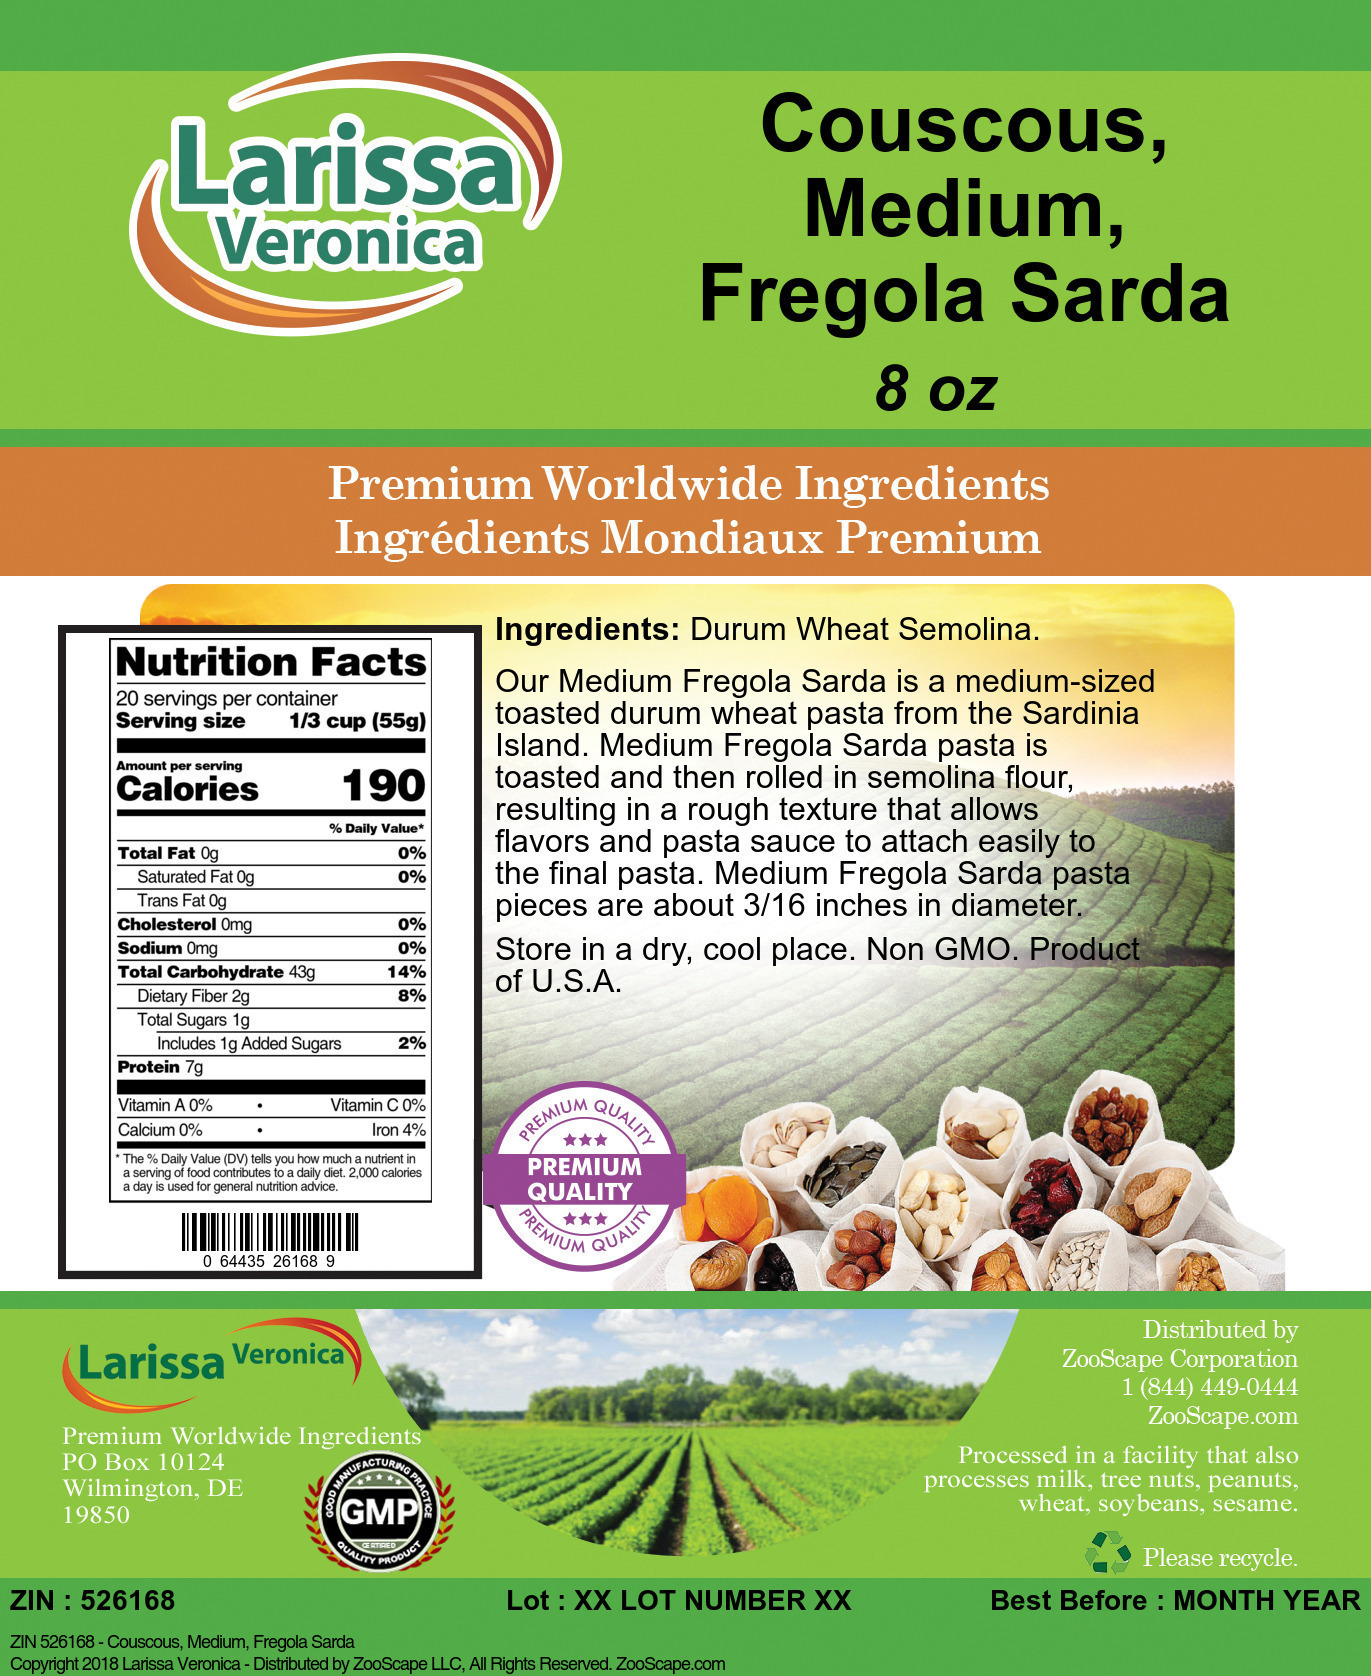 Couscous, Medium, Fregola Sarda - Label